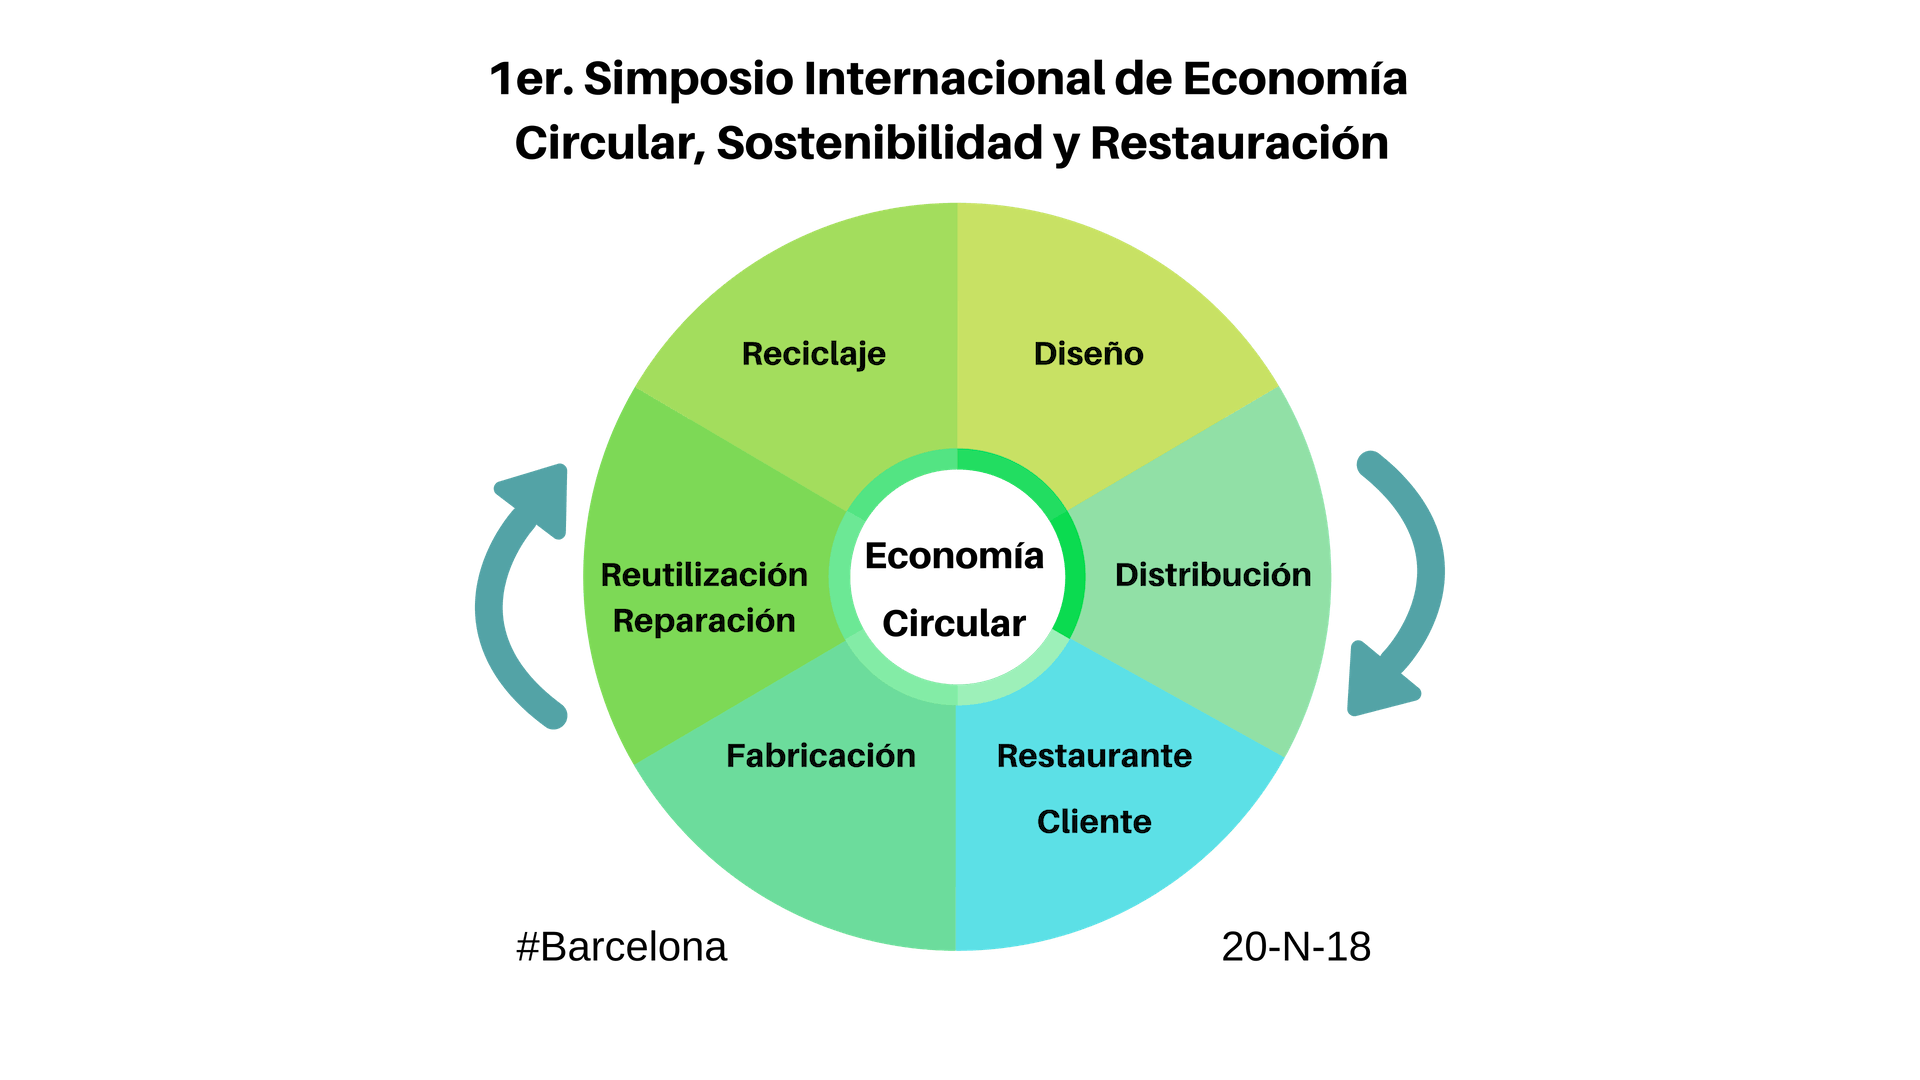 1er Simposio Internacional de Economia Circular, Sostenibilidad y Restauración